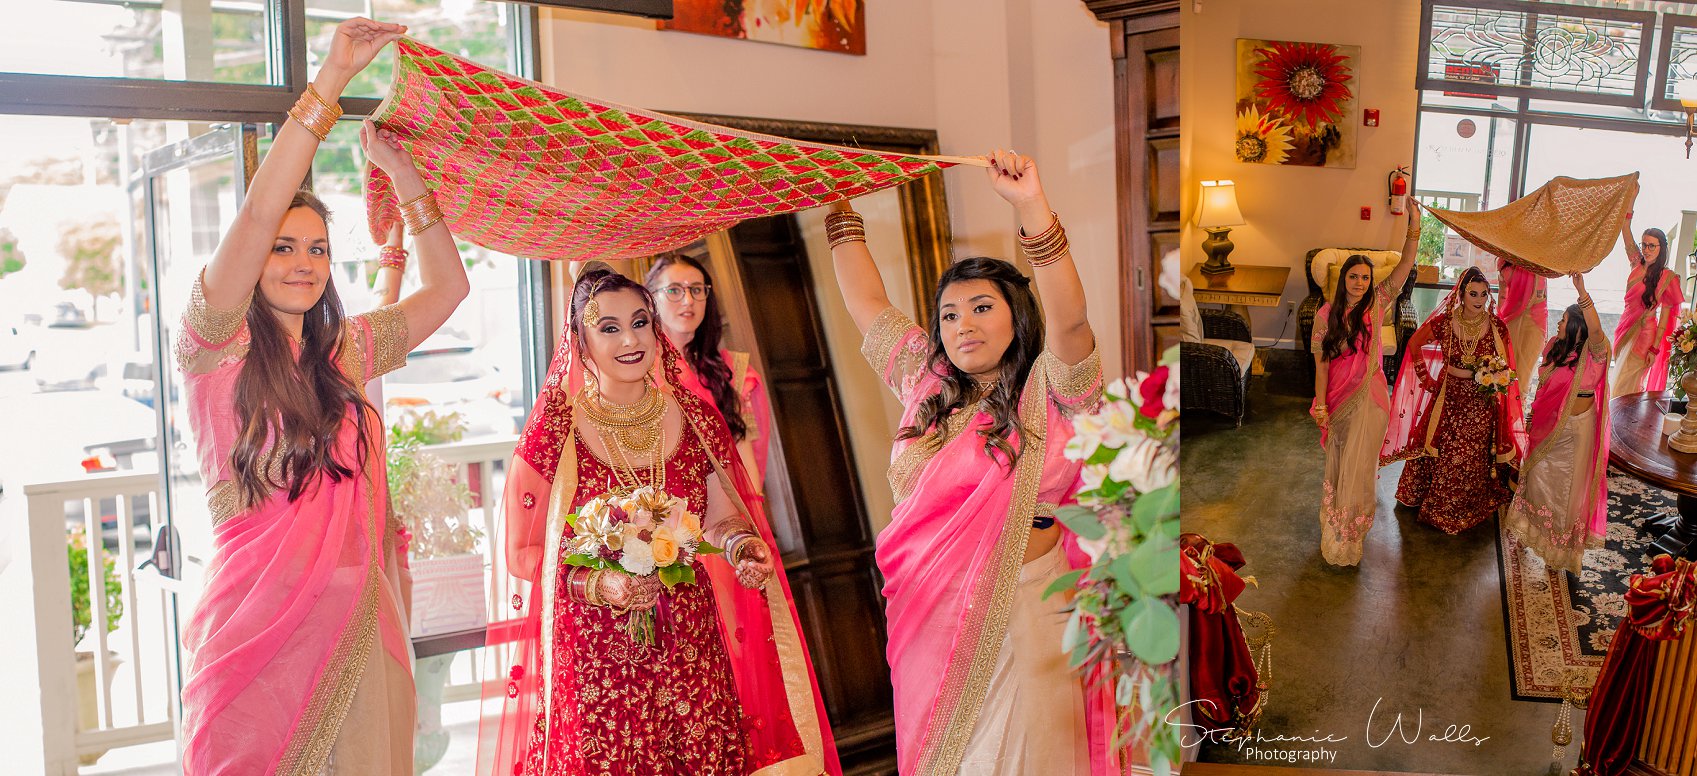 Kaushik 019 1 Snohomish Fusion Indian Wedding With Megan and Mo